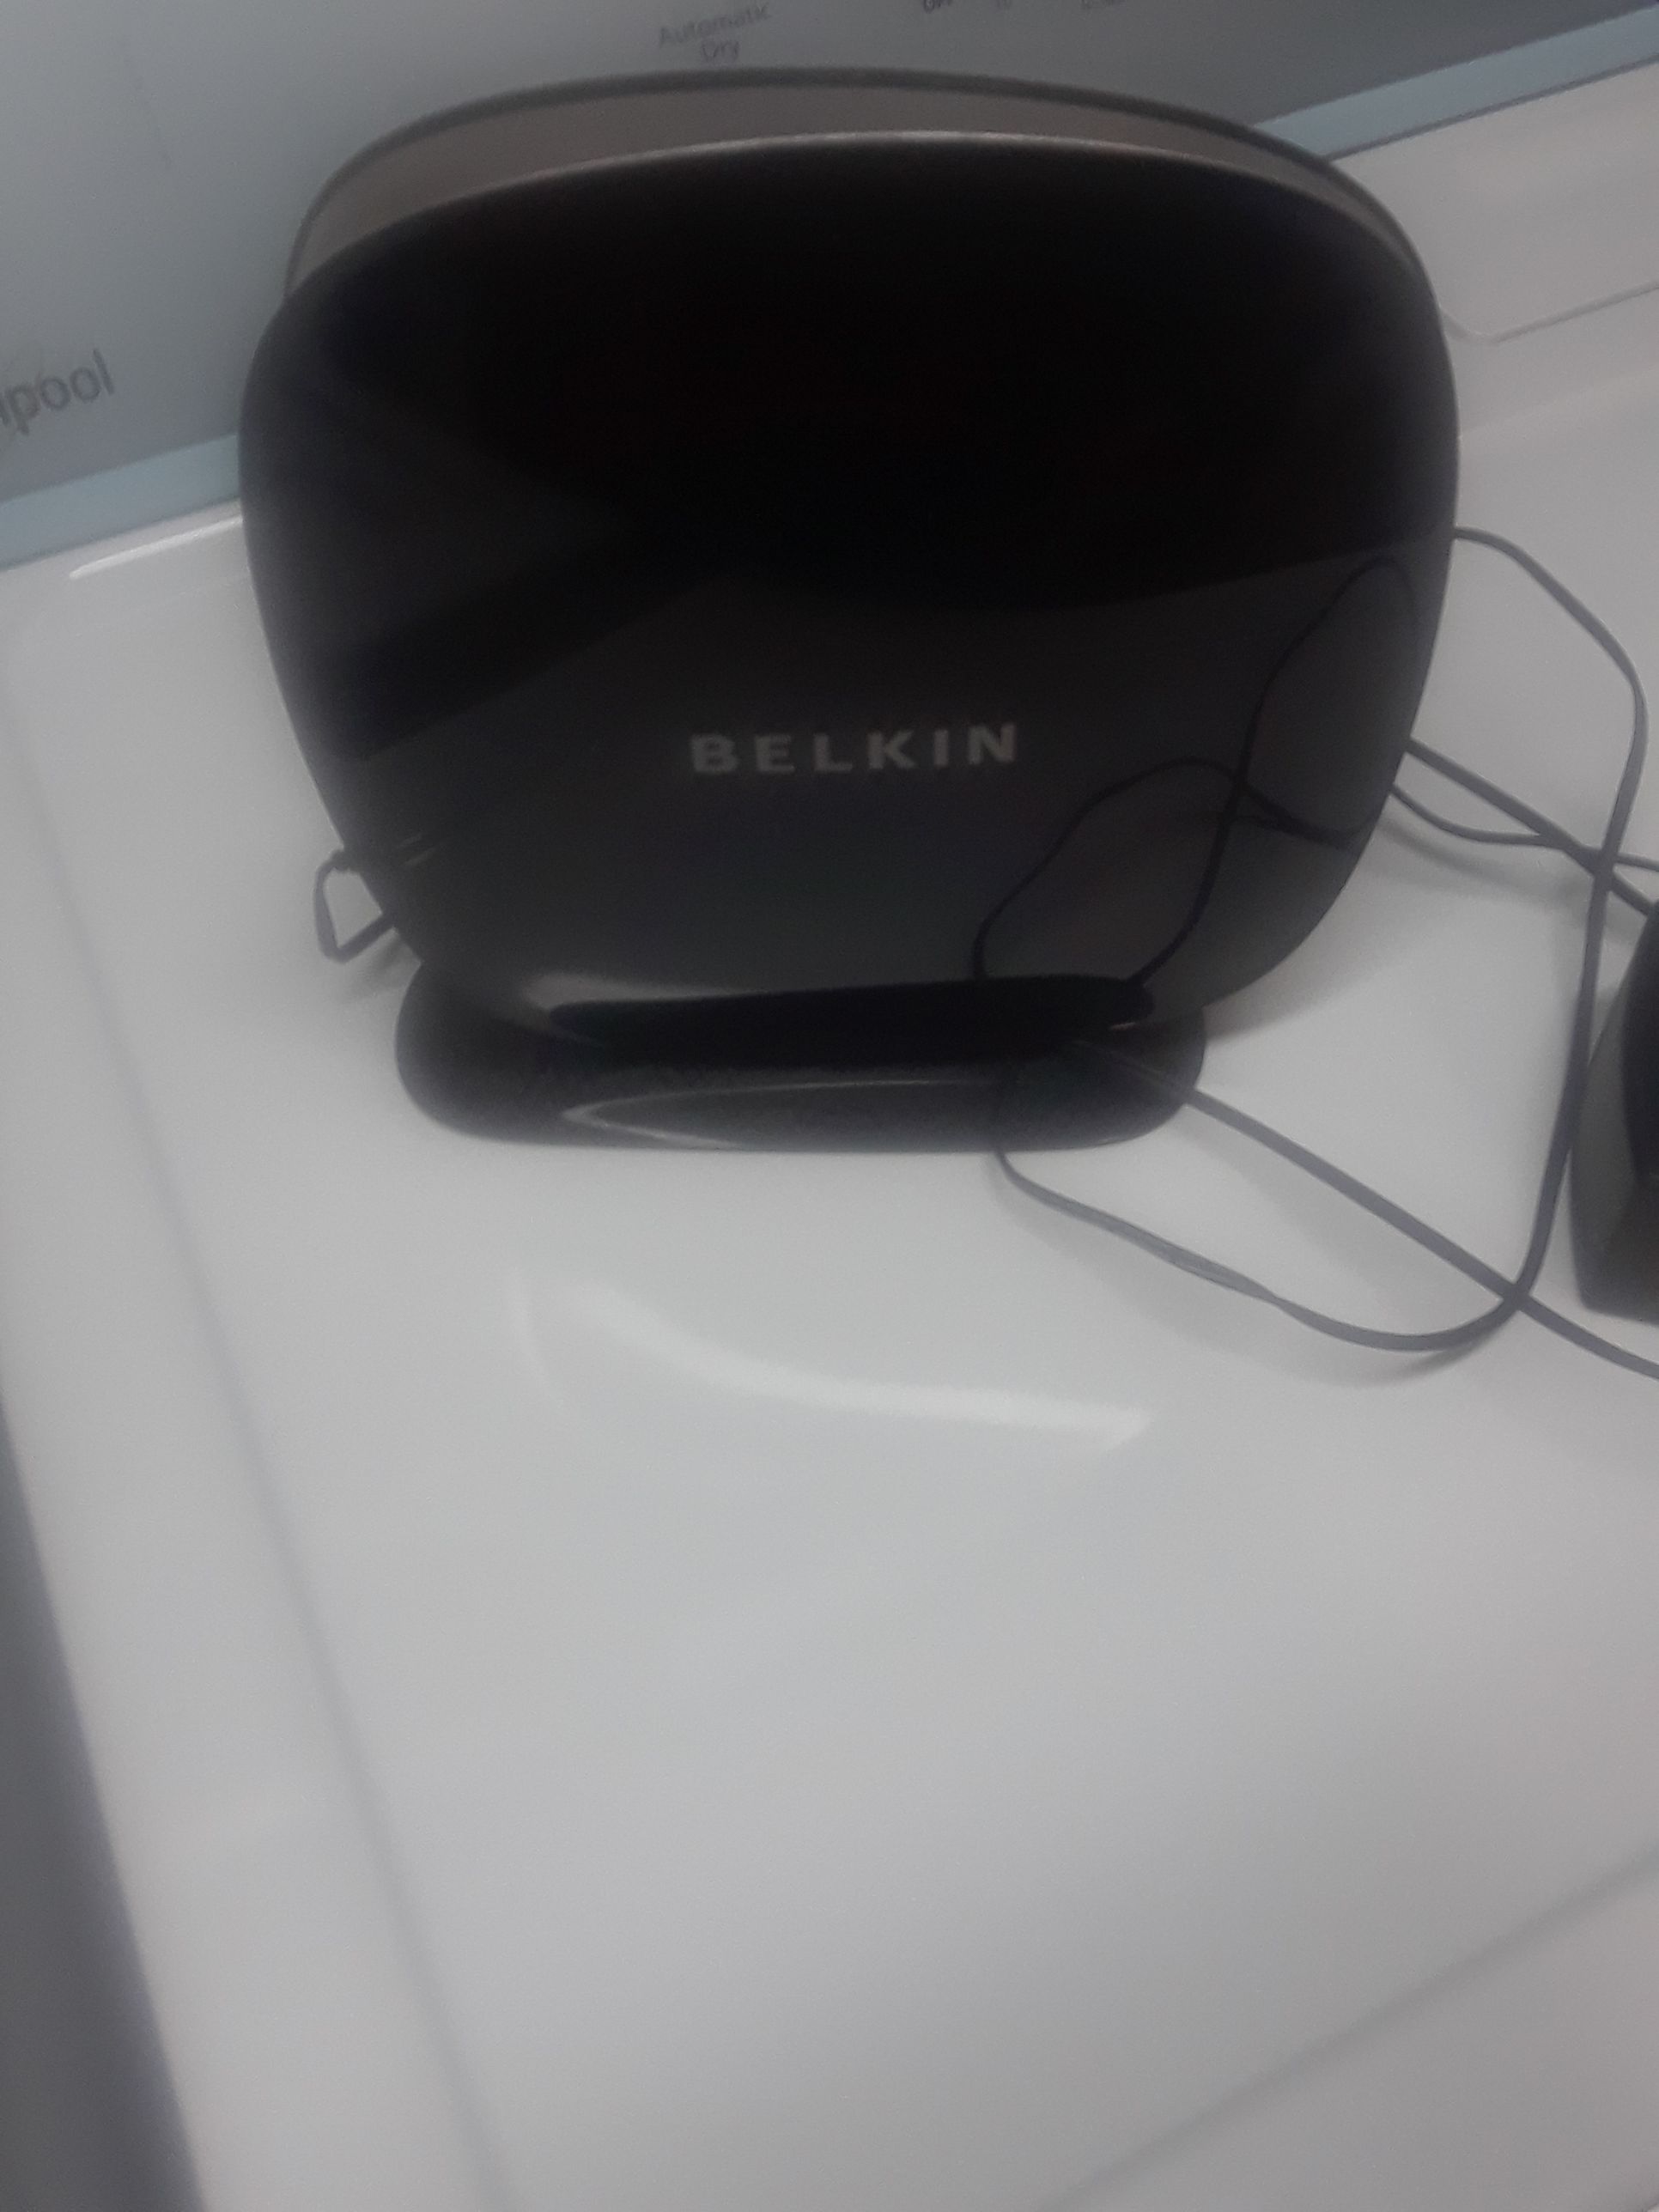 Wireless Belkin router